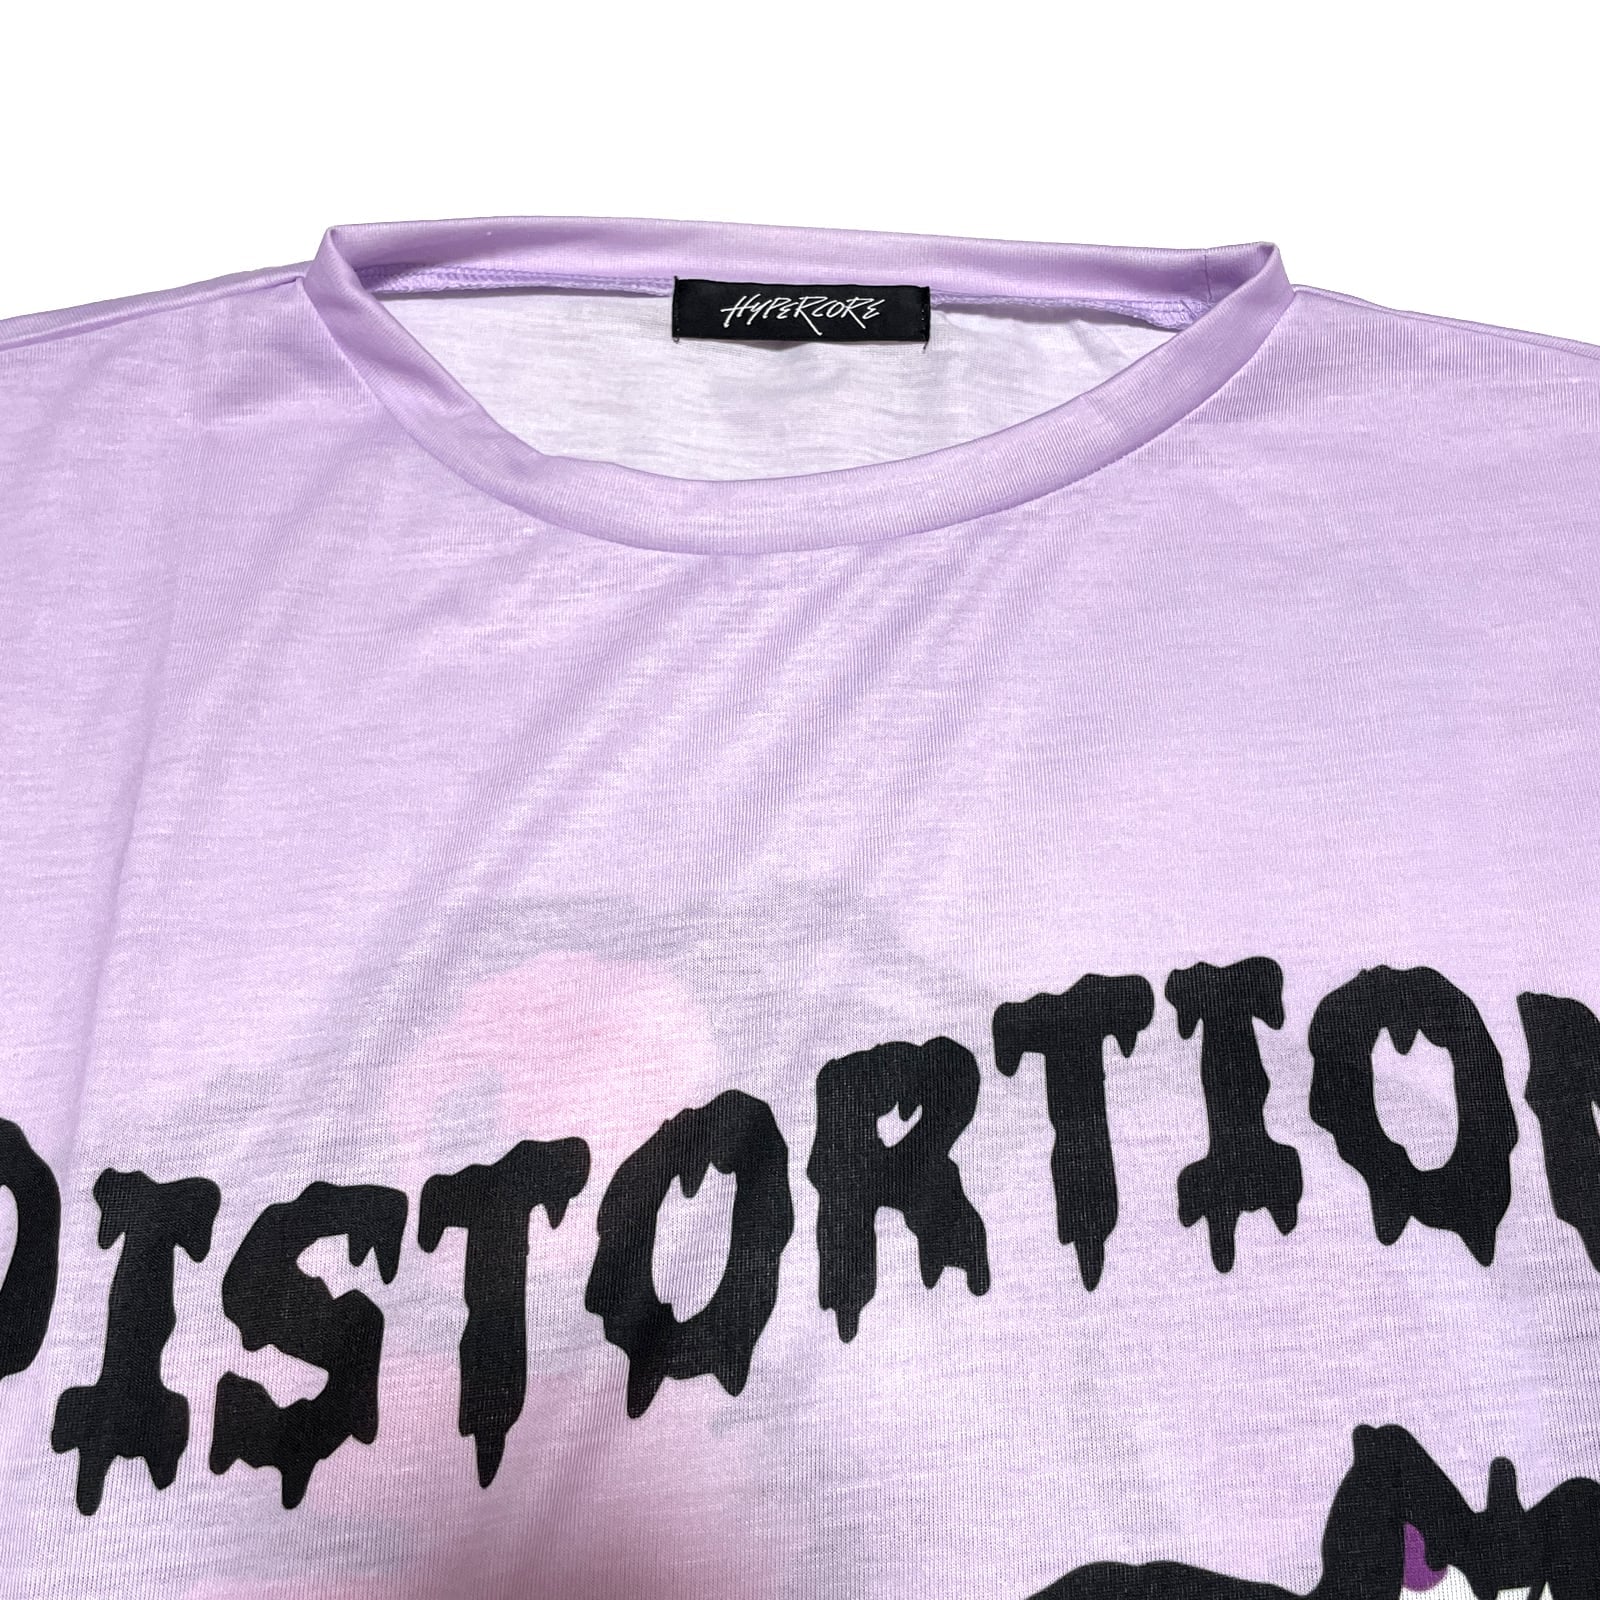 Hypercore "Distortion" portal t-shirt